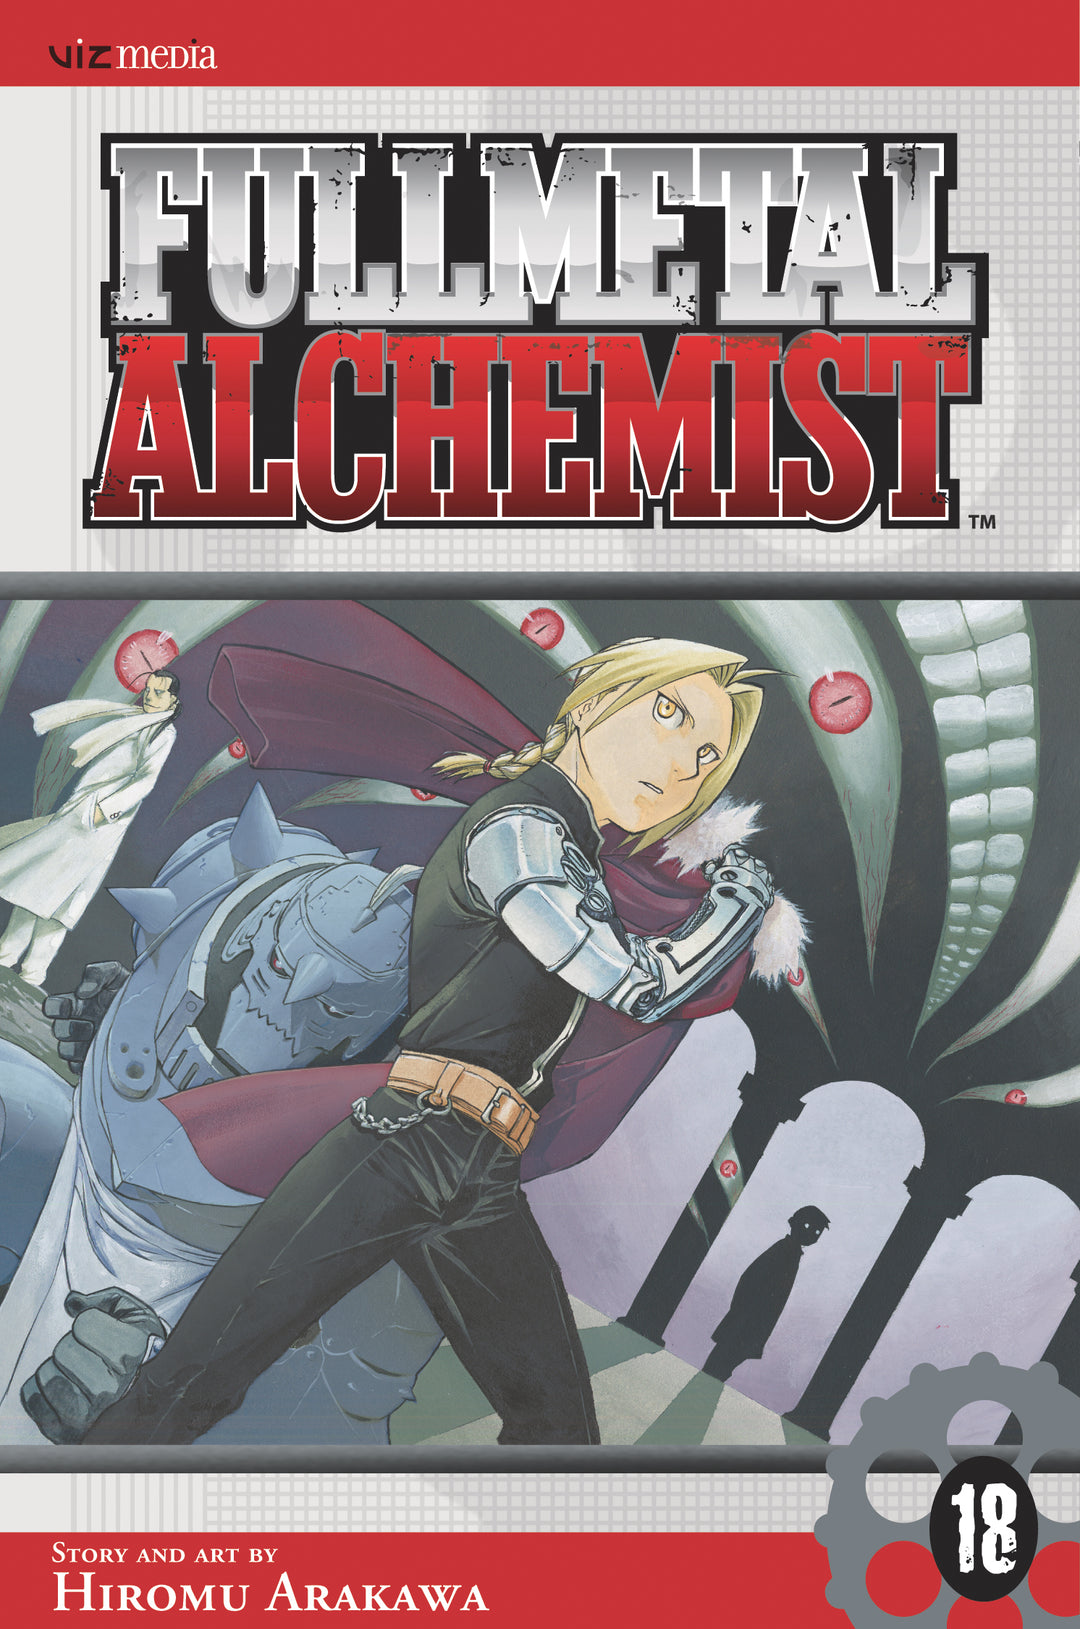 Fullmetal Alchemist, Vol. 18 - Manga Mate